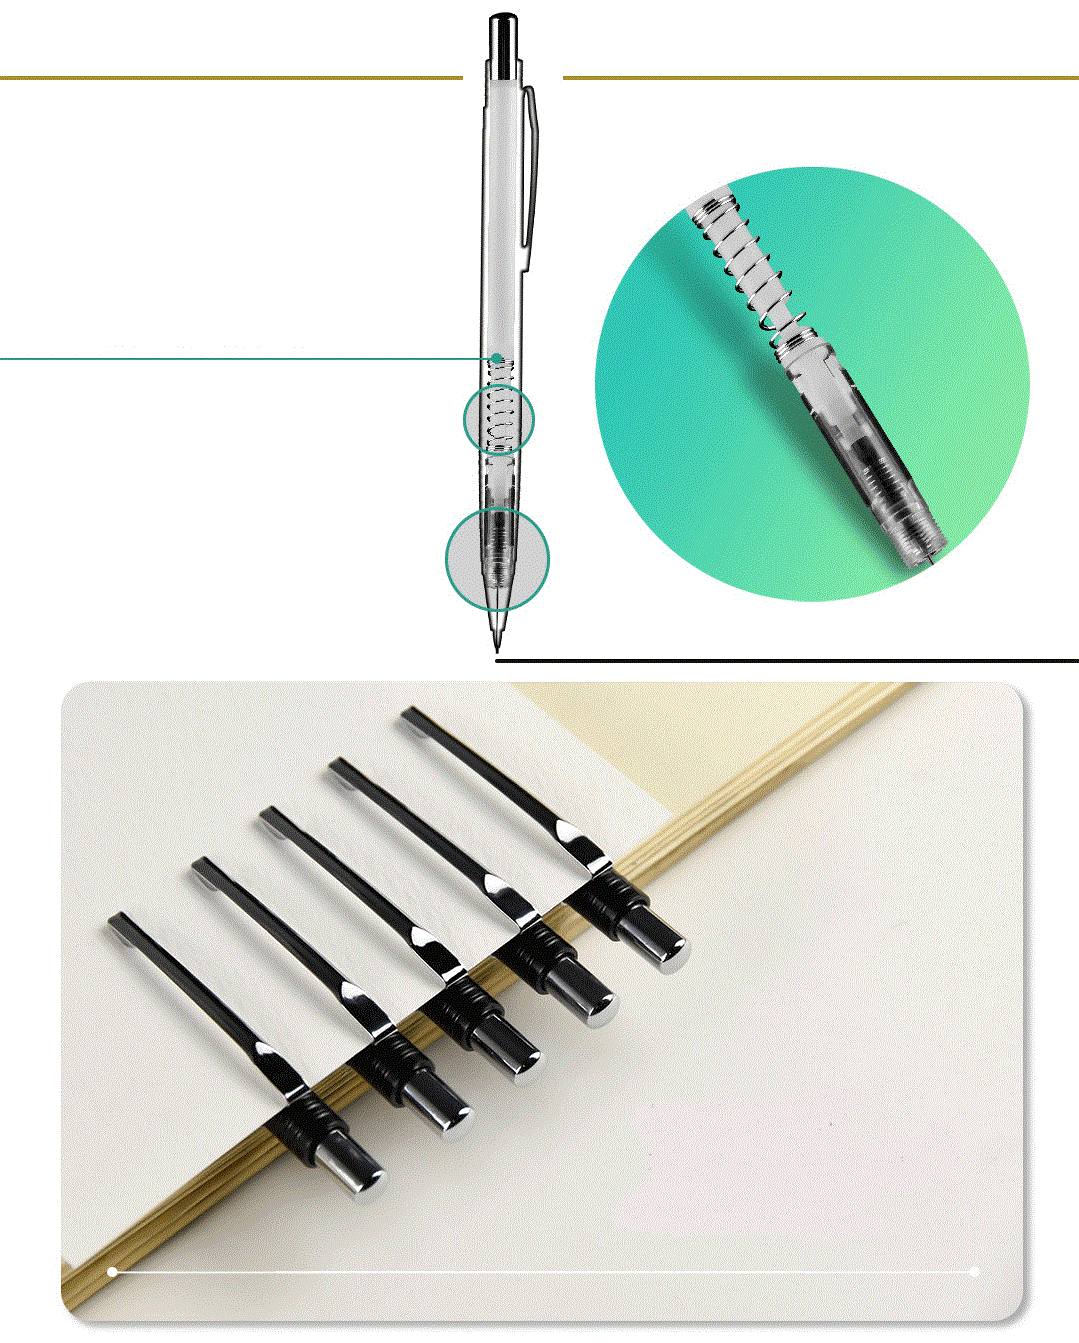 REMSONG AP-237 Auto Mechanical Pencil - 0.5 mm - Black - 3 Pack